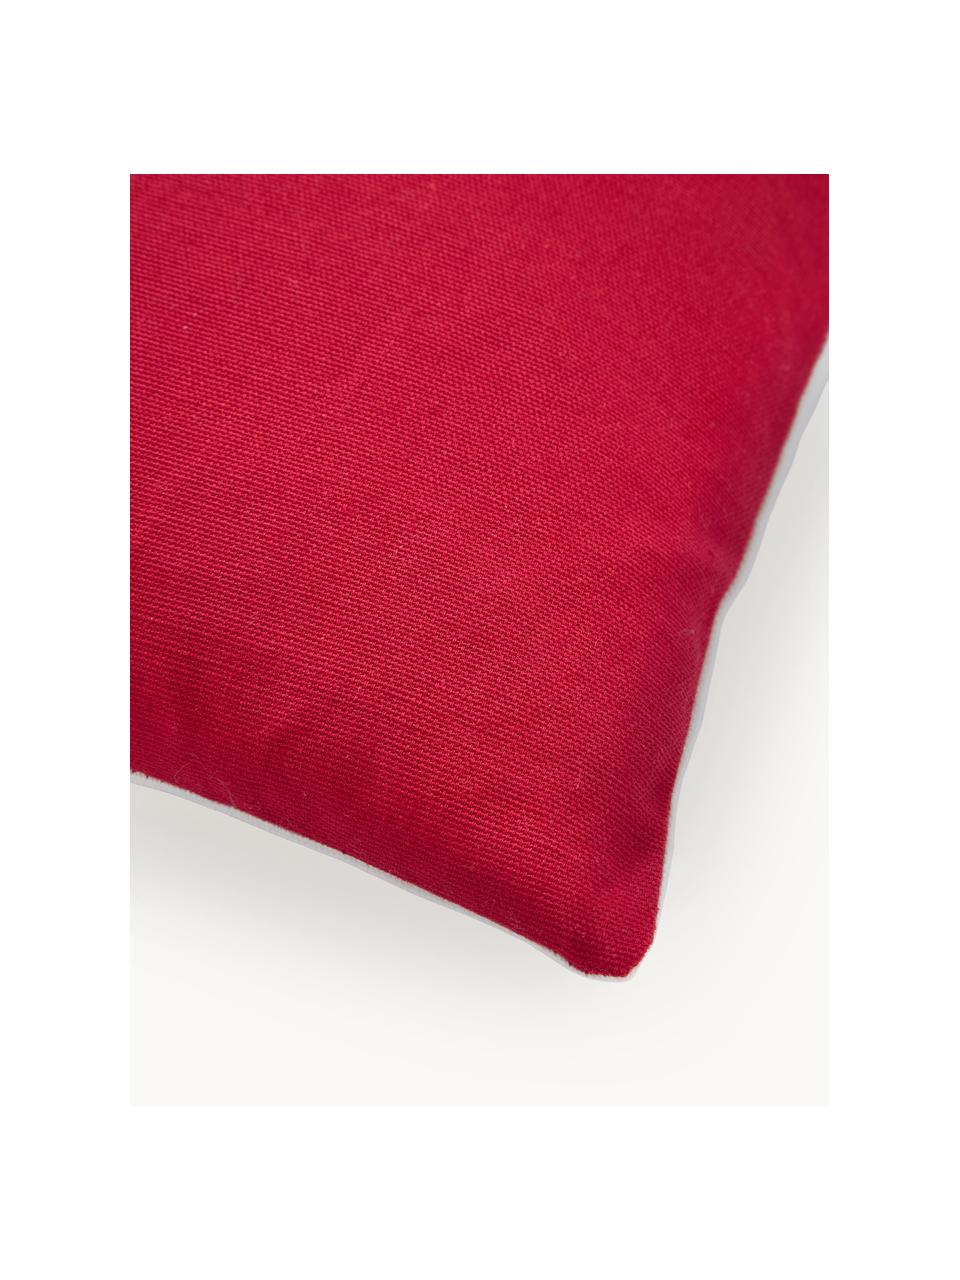 Poszewka na poduszkę Tinsel, 100% bawełna, Biały, wielobarwny, czerwony, S 45 x D 45 cm